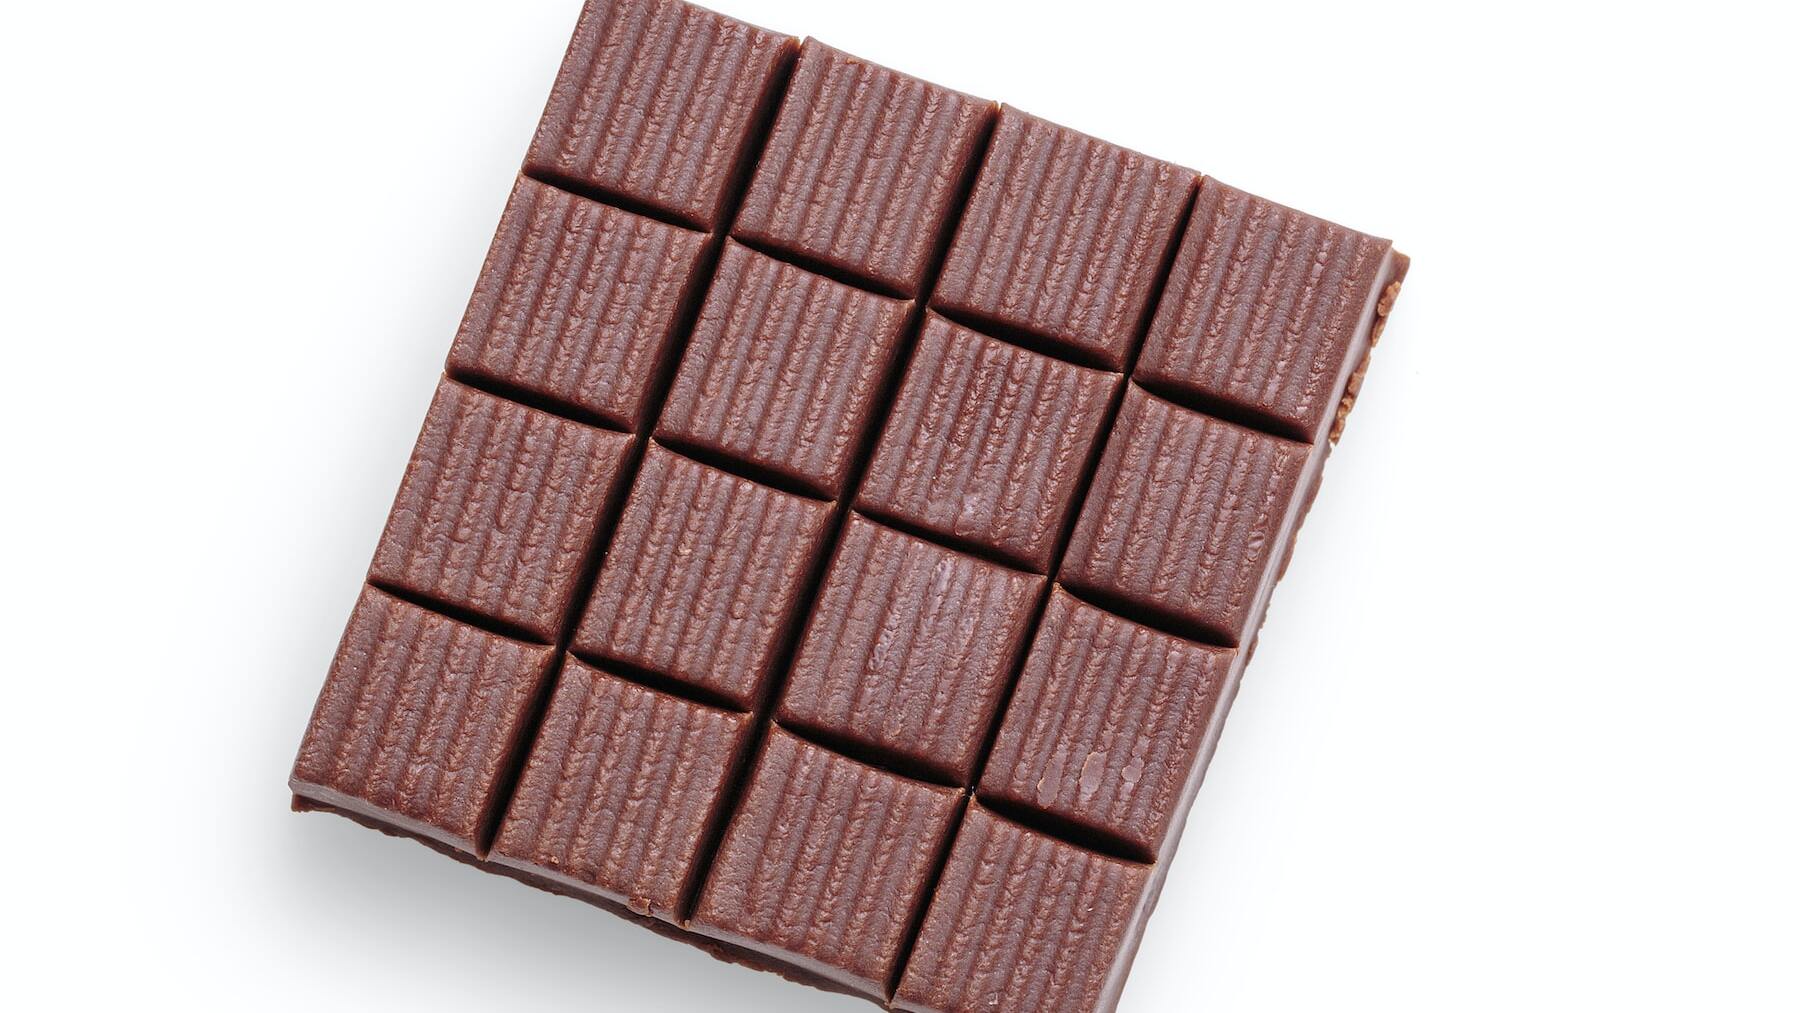 ¿Por qué el chocolate se envuelve con papel de aluminio?